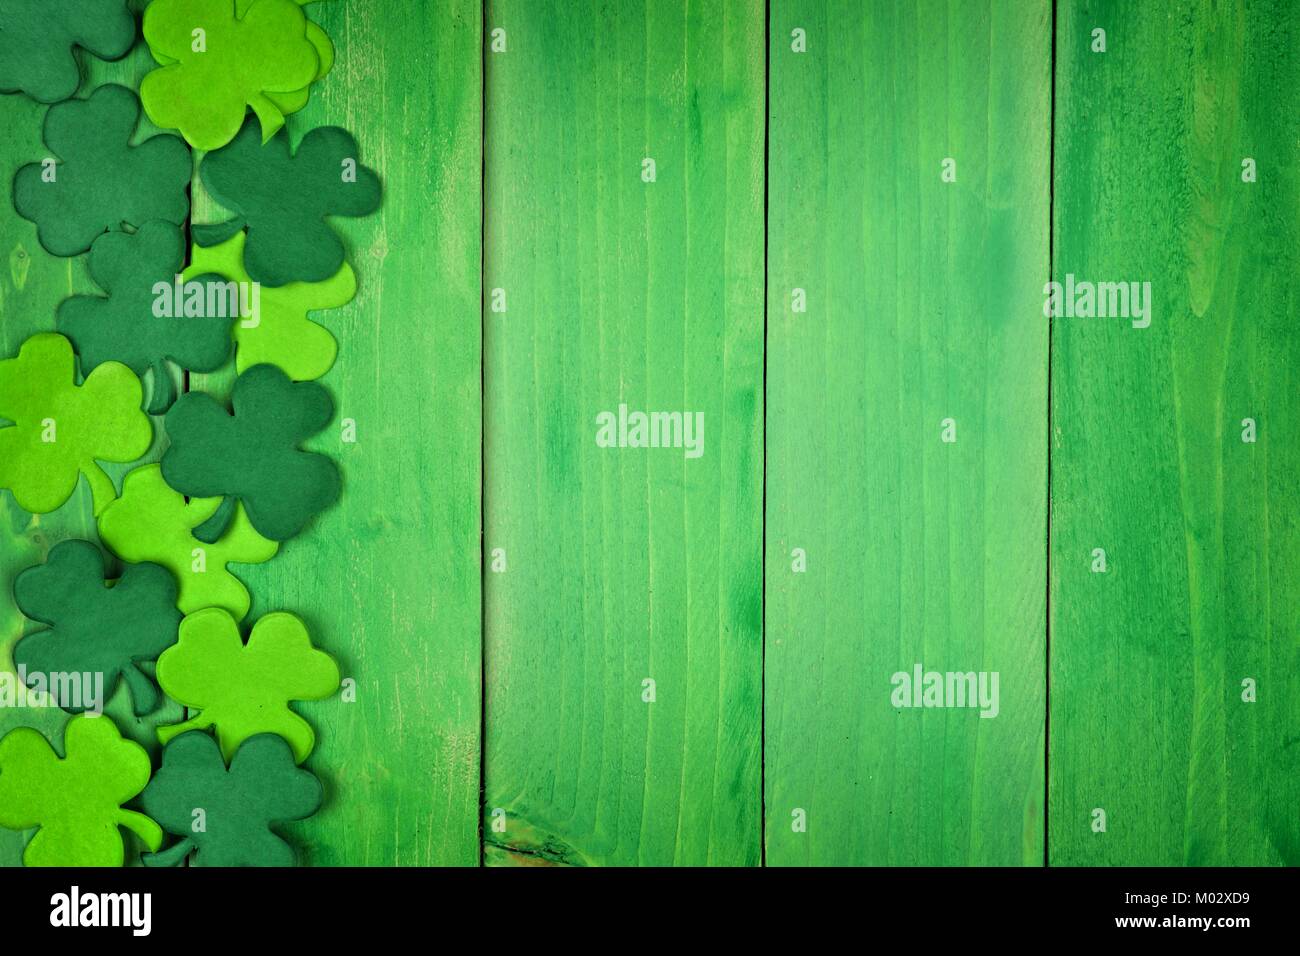 St Patricks Day Seite Papier shamrocks über ein grünes Holz Hintergrund Stockfoto